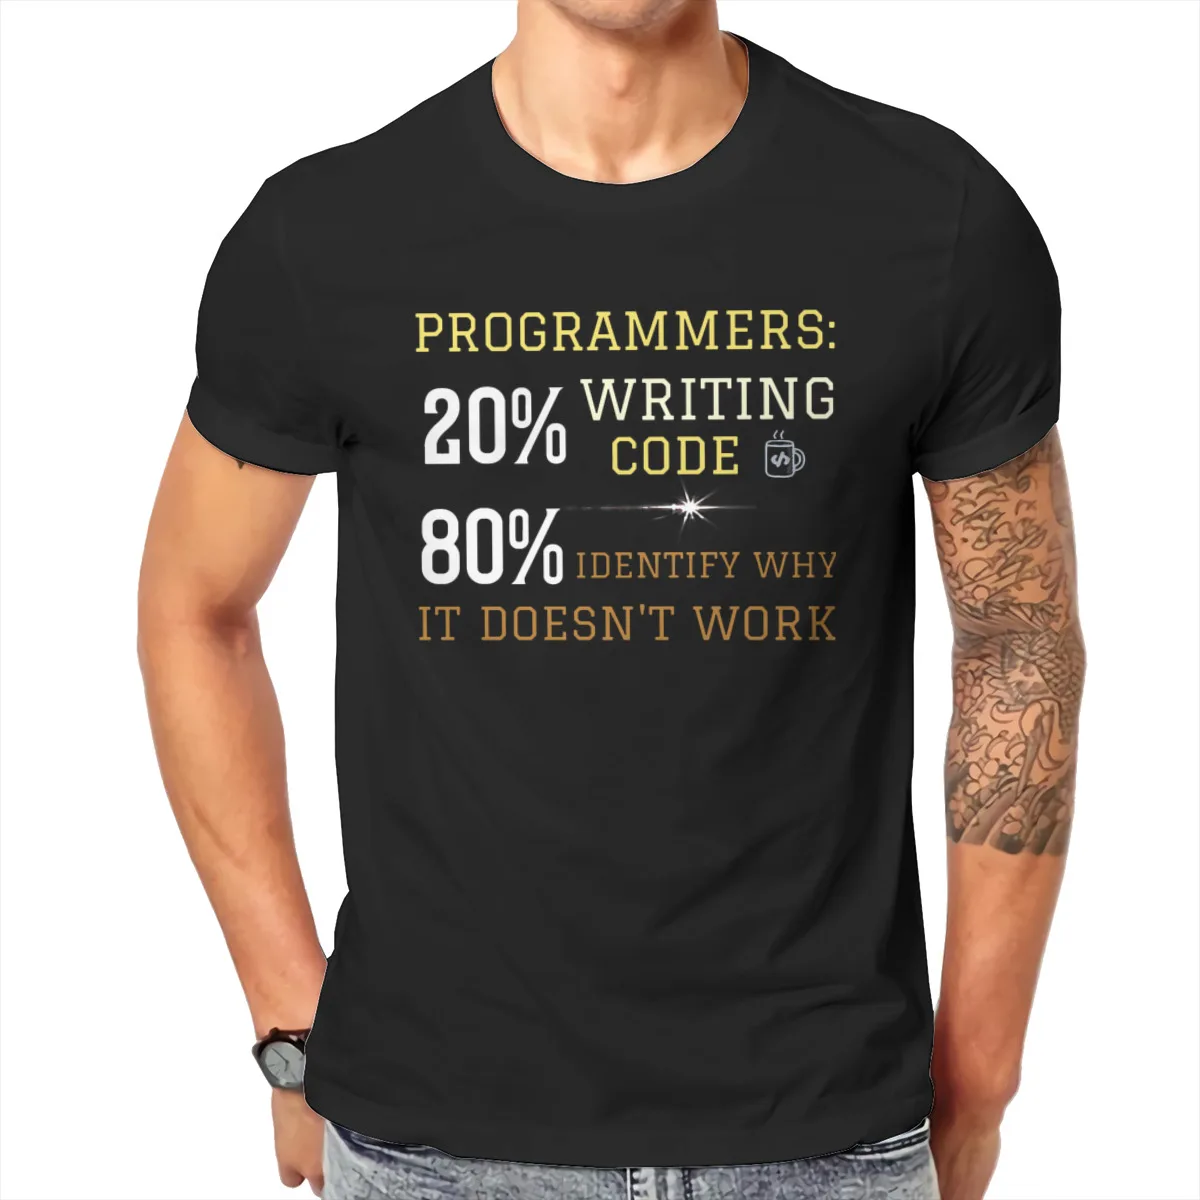 20% כתיבת קוד 80% לזהות למה זה לא עובד היפ הופ חולצת טי תוכנה מפתחים זה מתכנת חנון T חולצה חולצה